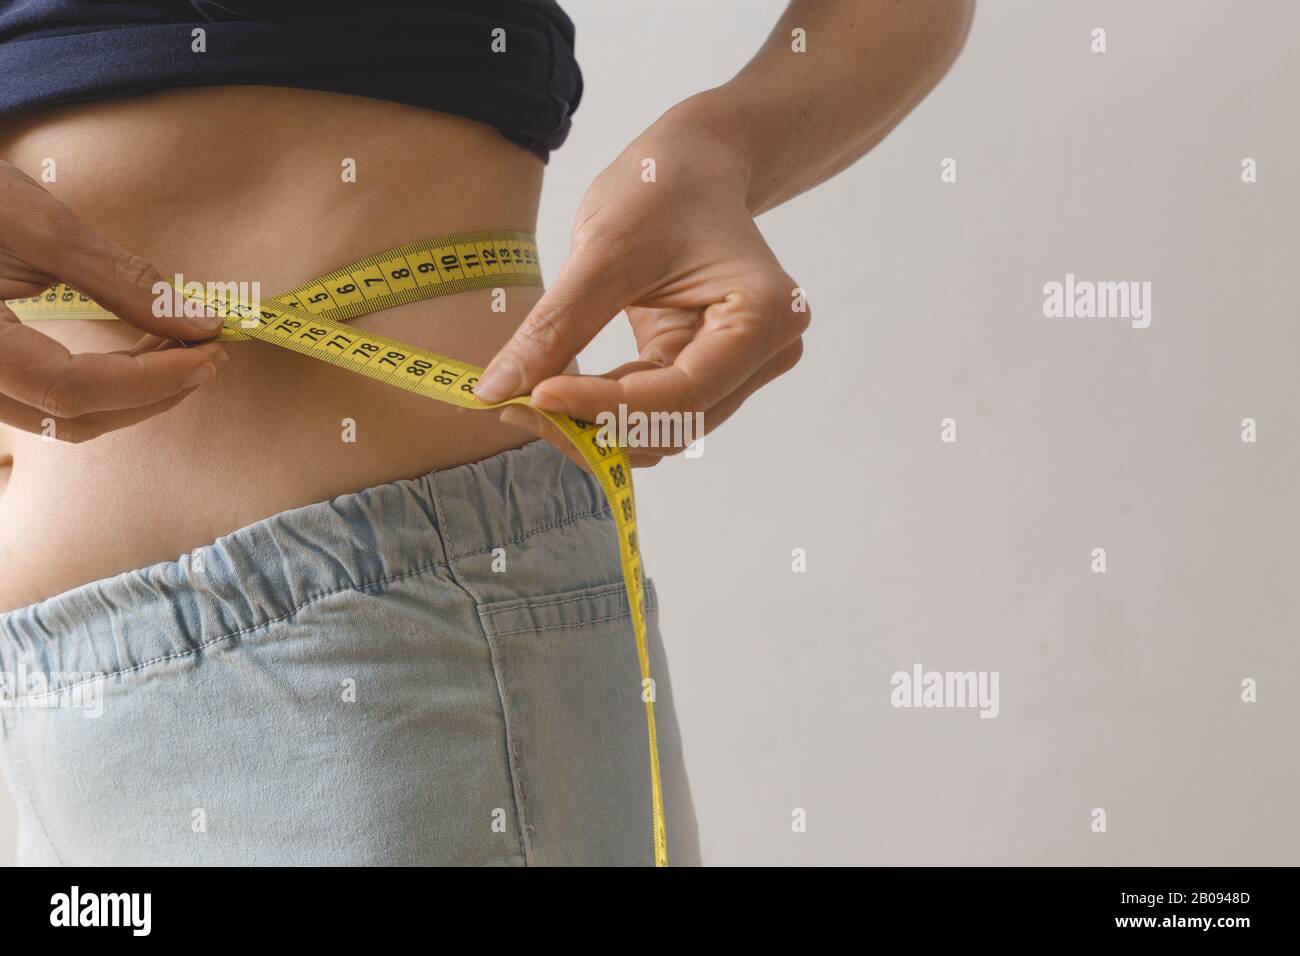 Eine junge Frau misst ihre Taille mit einem Maßband. Das Konzept des Gewichtsverlustes. Stockfoto